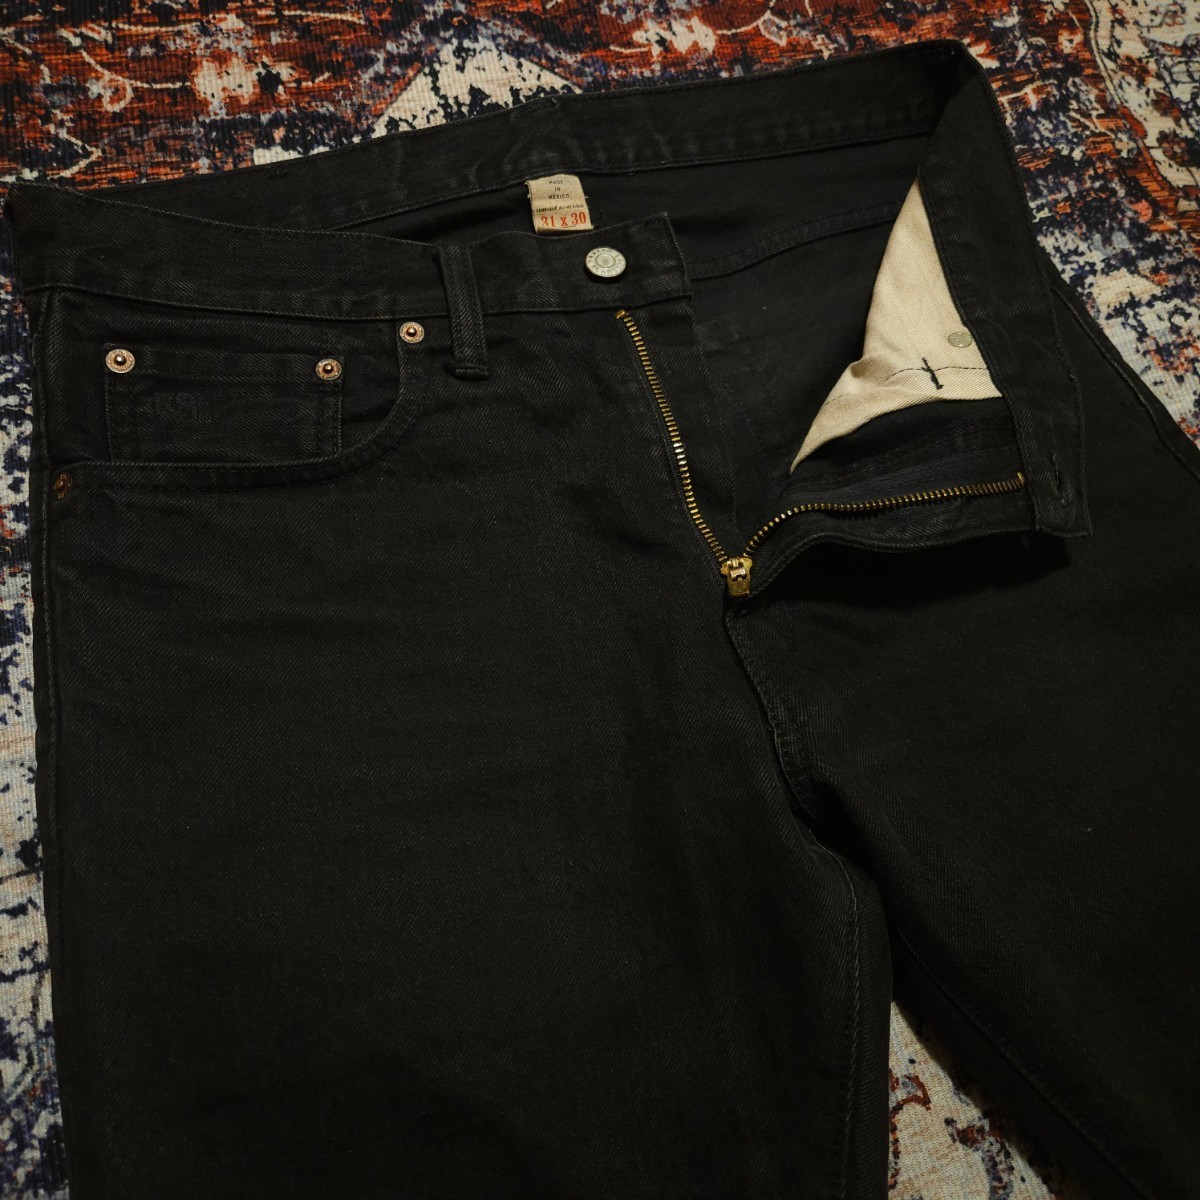 【激渋】 RRL Black Wash Slim Narrow Jeans 【31×30】 ブラック ウォッシュ スリムナロー ジーンズ Levi's 606 パンク 黒 Ralph Lauren_画像3